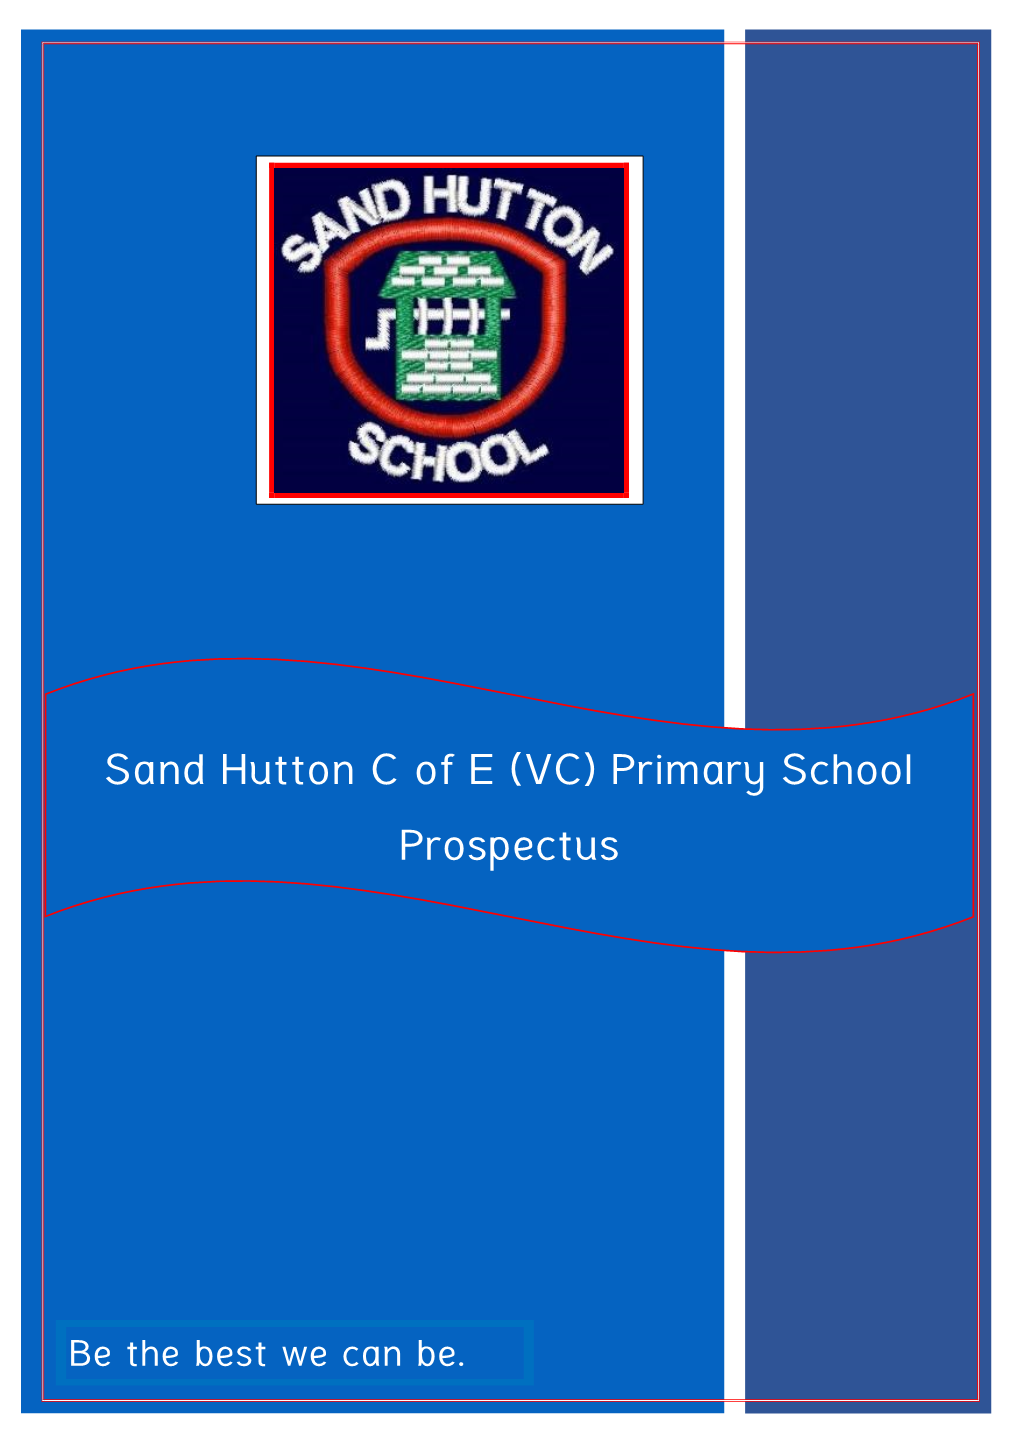 Sand Hutton C of E (VC) Primary School Prospectus